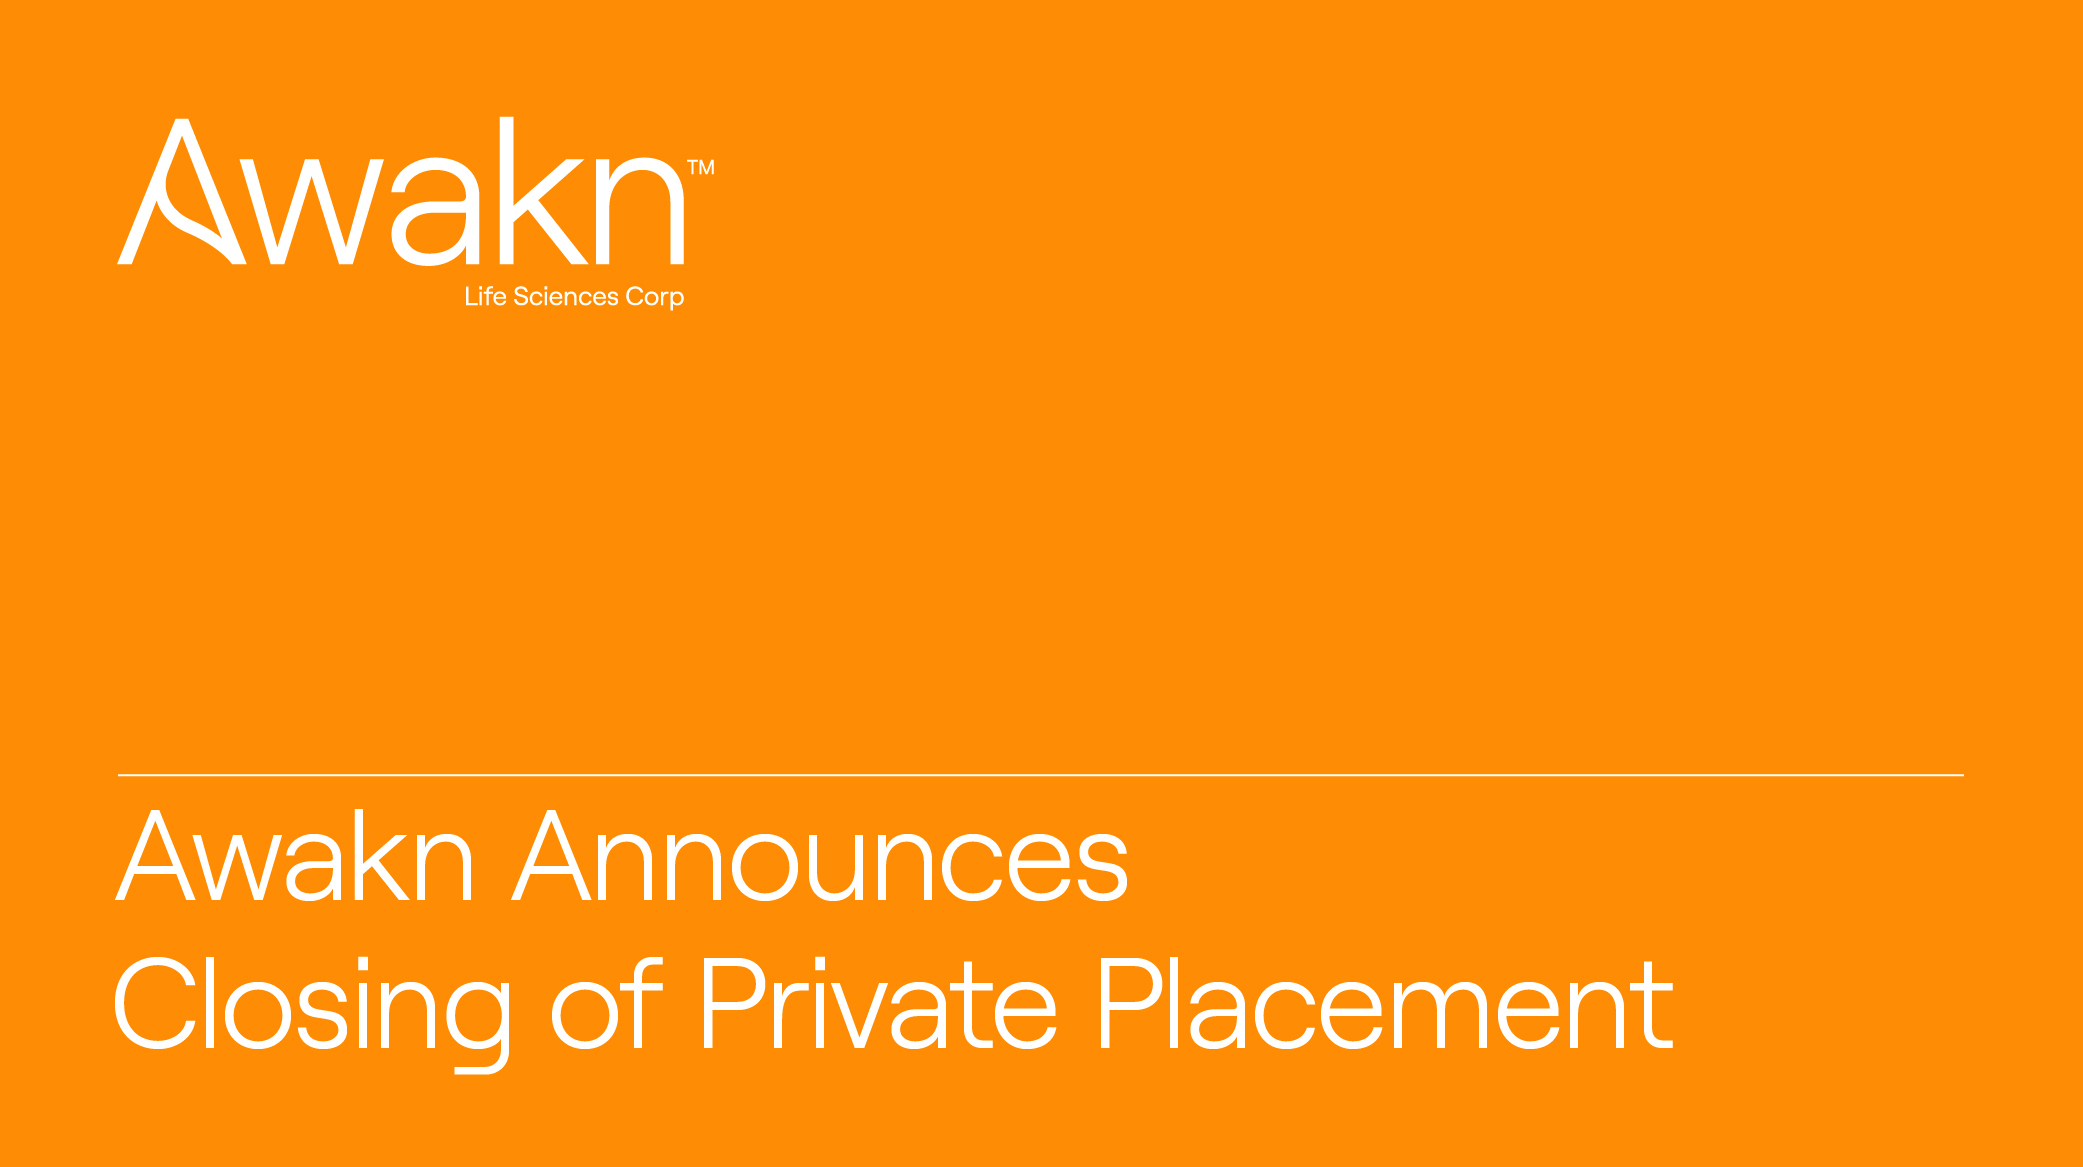 Awakn Life Sciences Announces Private Placement